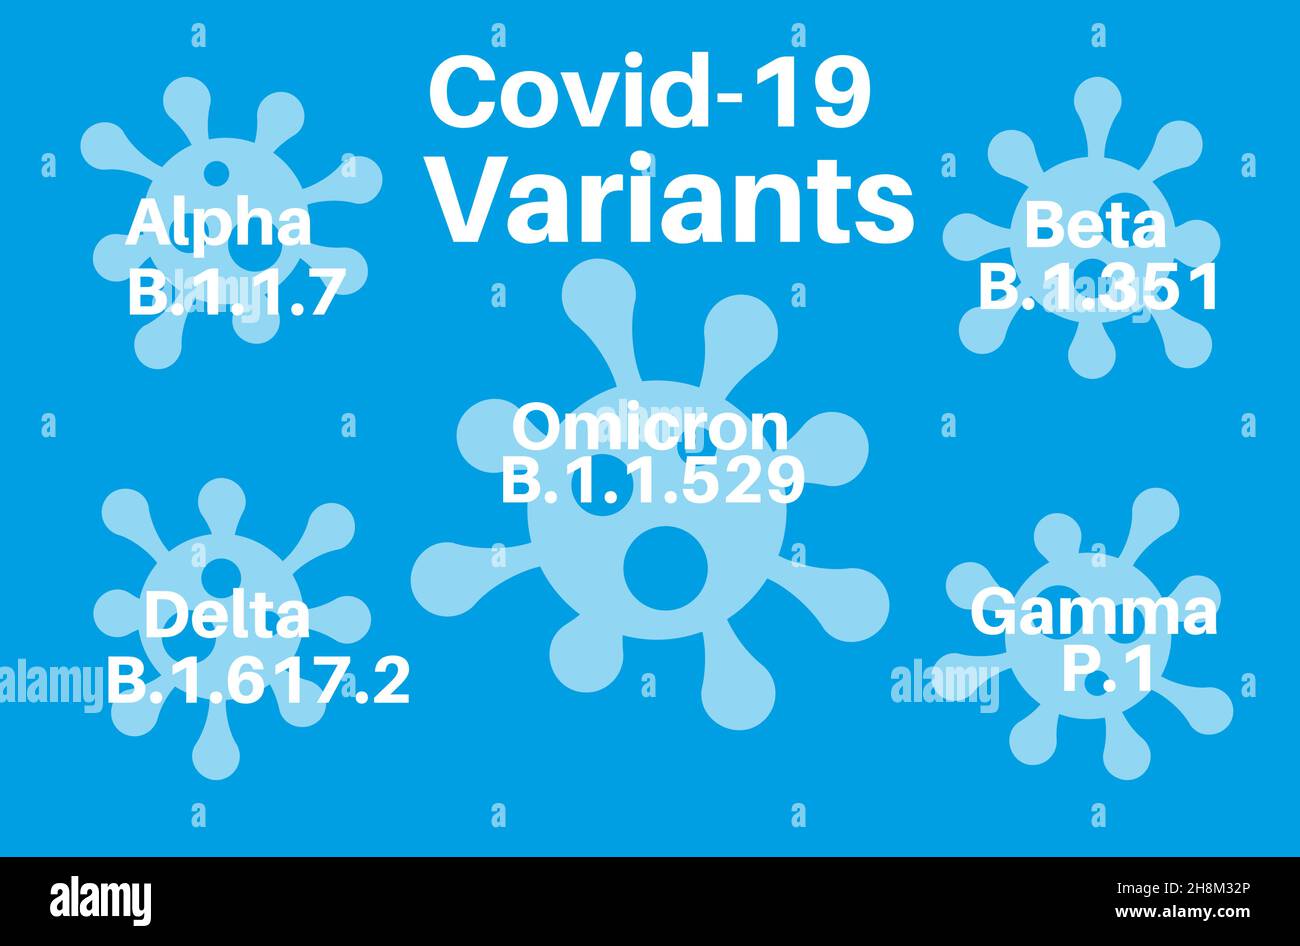 Coronavirus-Symbole mit WHO-Variantennamen aus dem griechischen Alphabet -alpha, beta, gamma, Delta und omicron-Virus-Logos. Stock Vektor